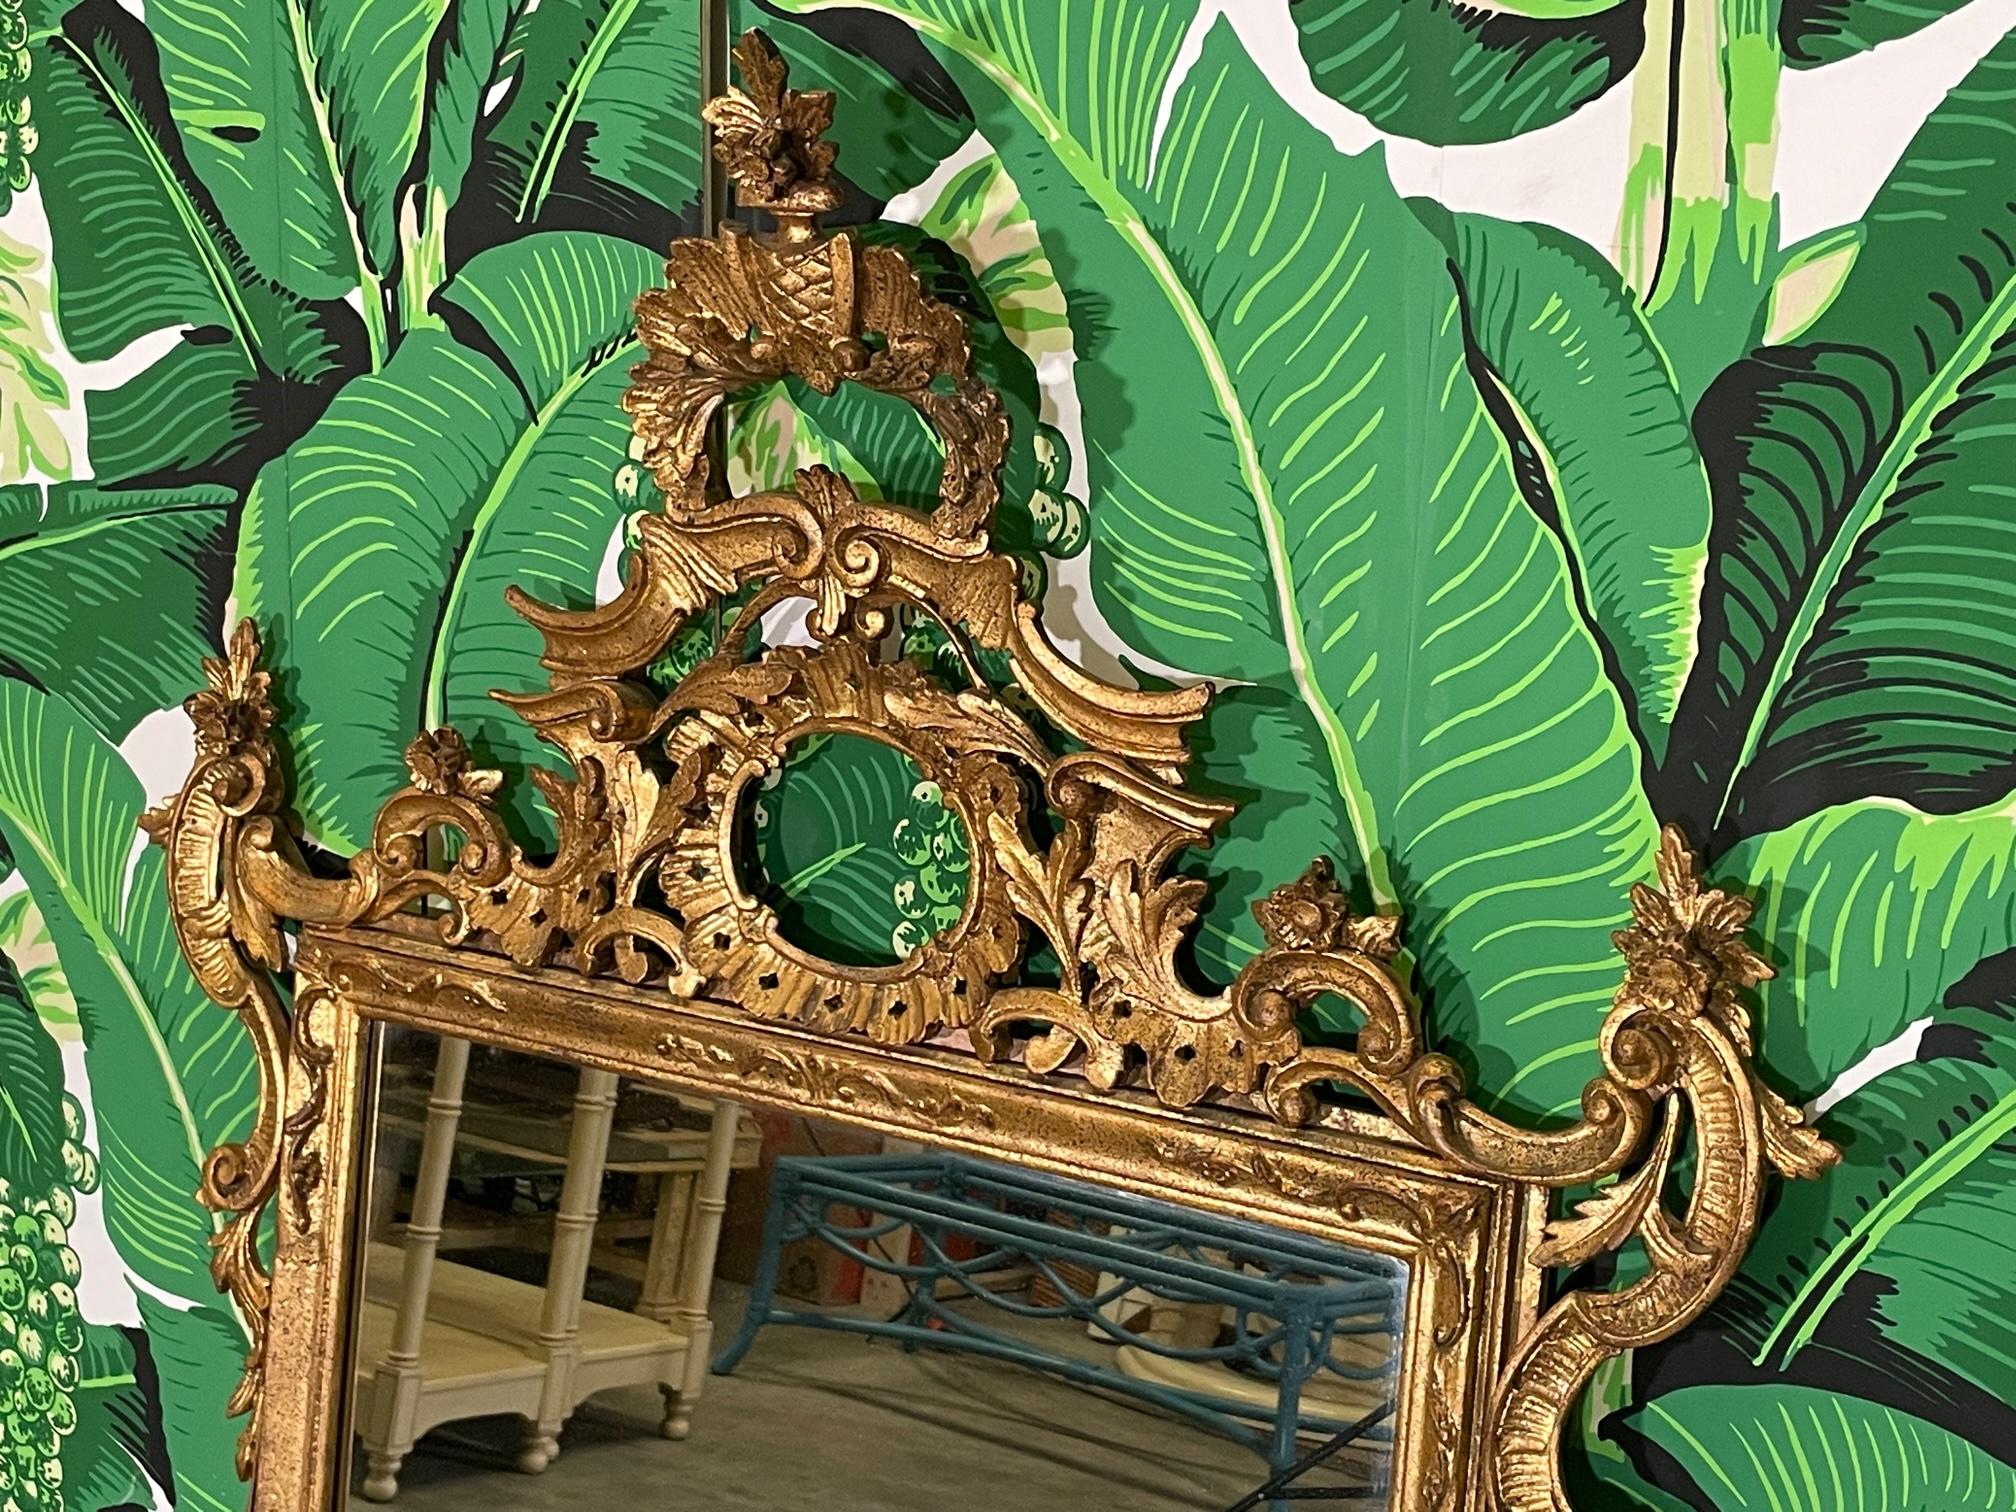 Ce grand miroir mural de style rococo présente une dorure d'origine et un cadre ouvert sculpté de fleurs et de feuilles d'acanthe. Marqué avec l'étiquette de l'Italie. Bon état avec des imperfections correspondant à l'âge, voir les photos pour les